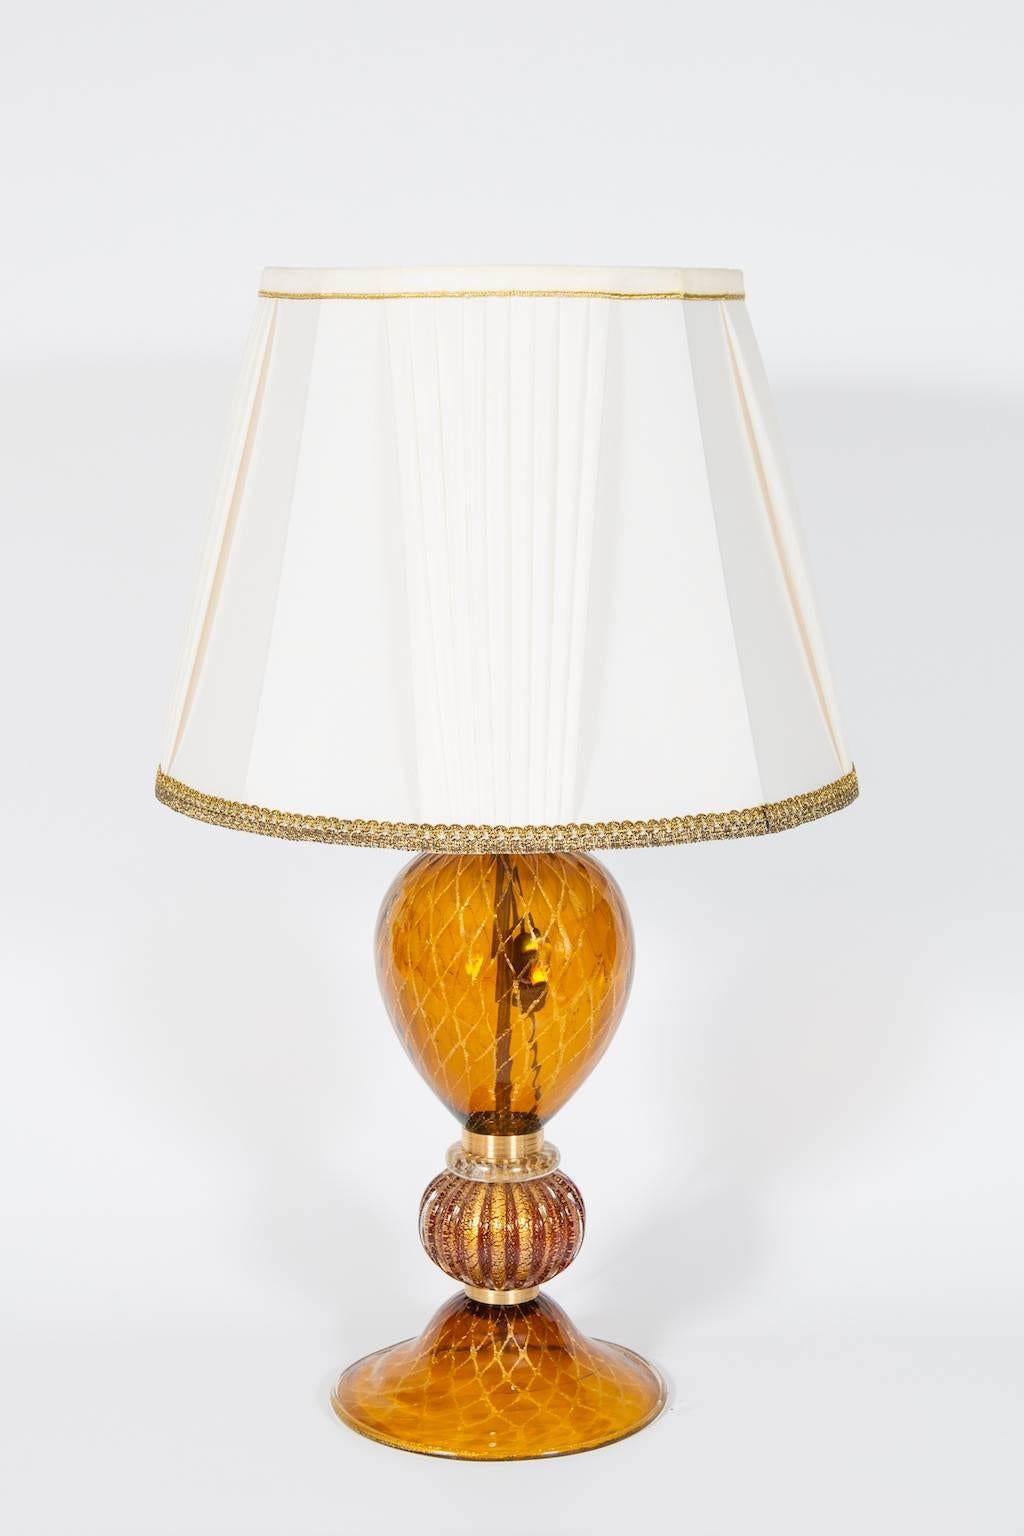 Élégante et unique lampe de table vénitienne italienne,  Verre soufflé de Murano, ambre et or 24 carats, années 1980.
Ce portrait est composé d'un socle et d'un corps principal en verre ambré avec des bandes d'or 24 carats en forme de nid d'abeille.